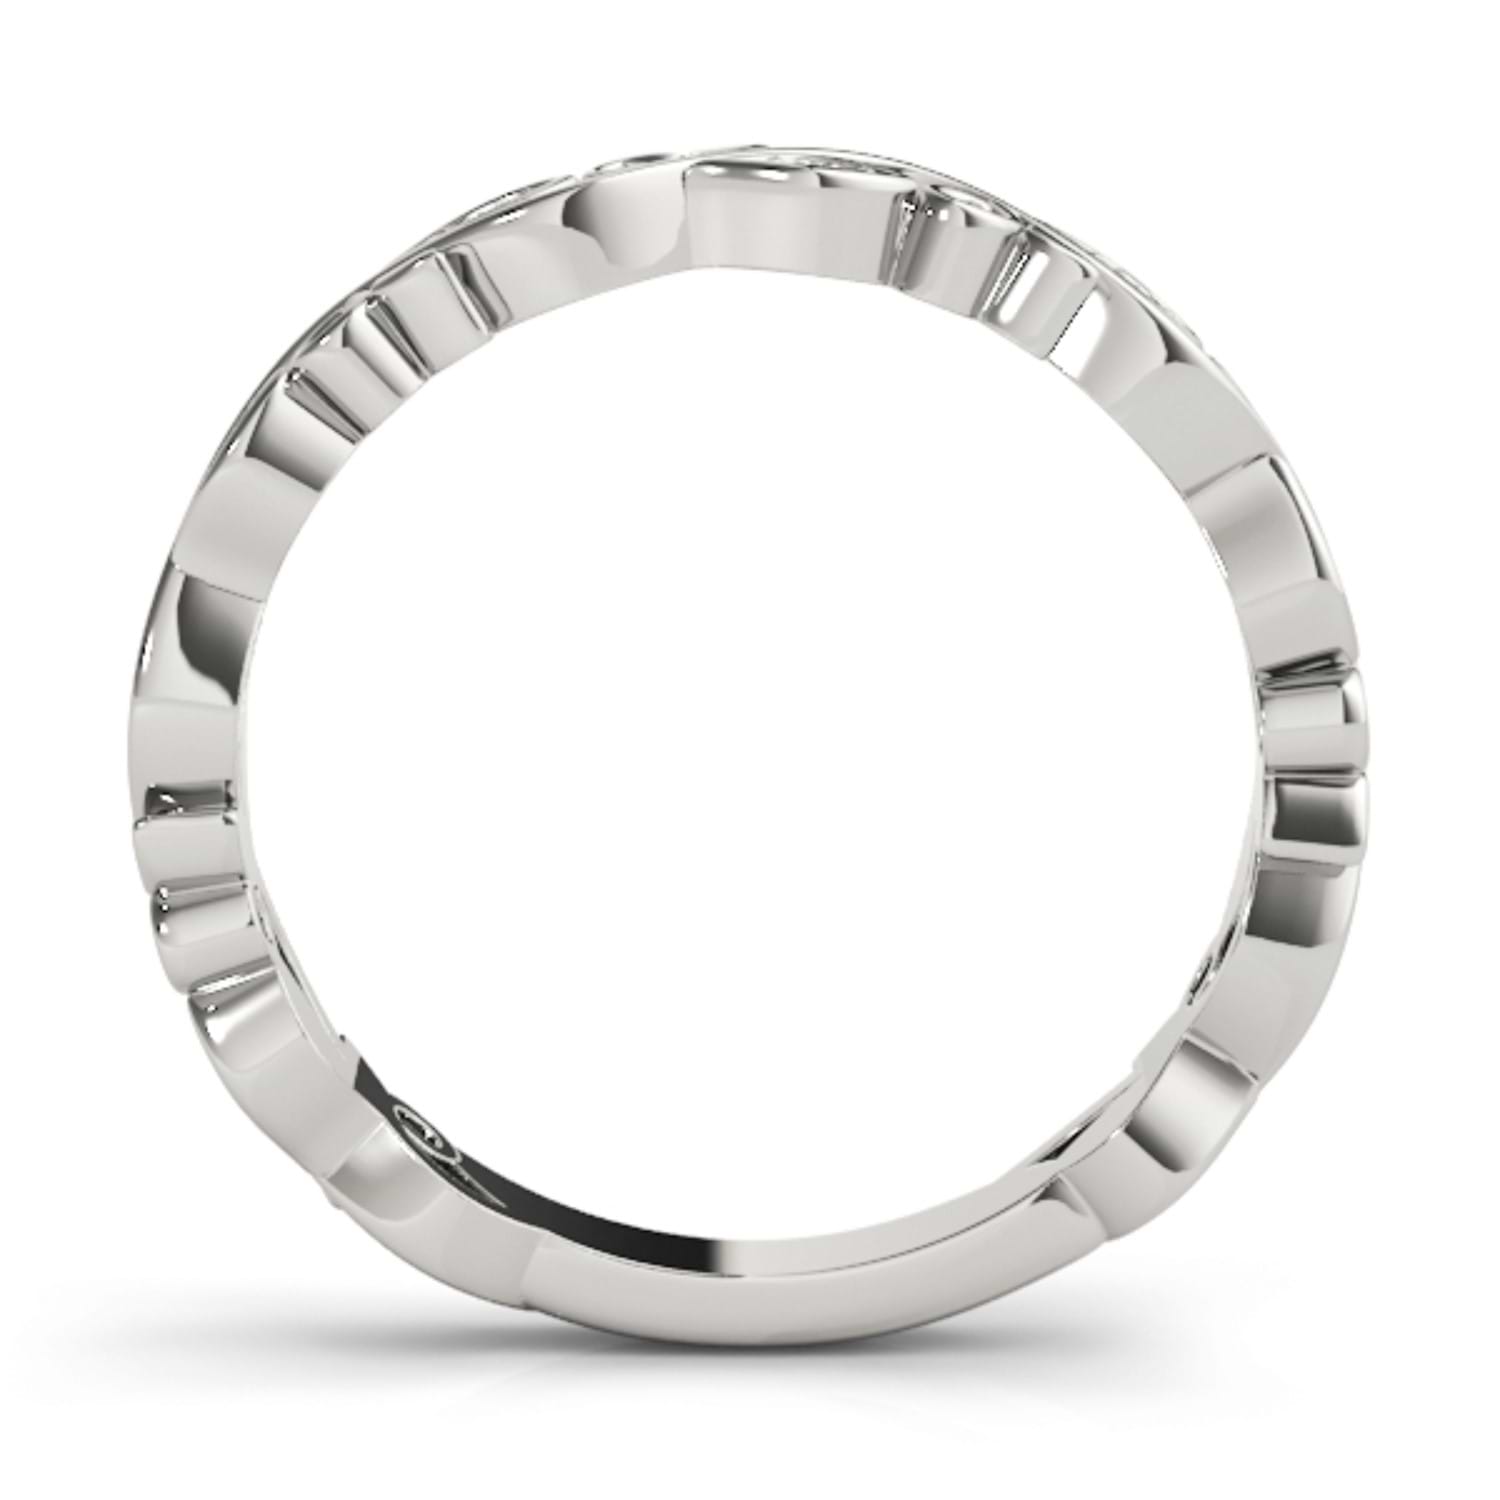 Aquamarine Leaf Fashion Ring Wedding Band 14k White Gold (0.05ct)